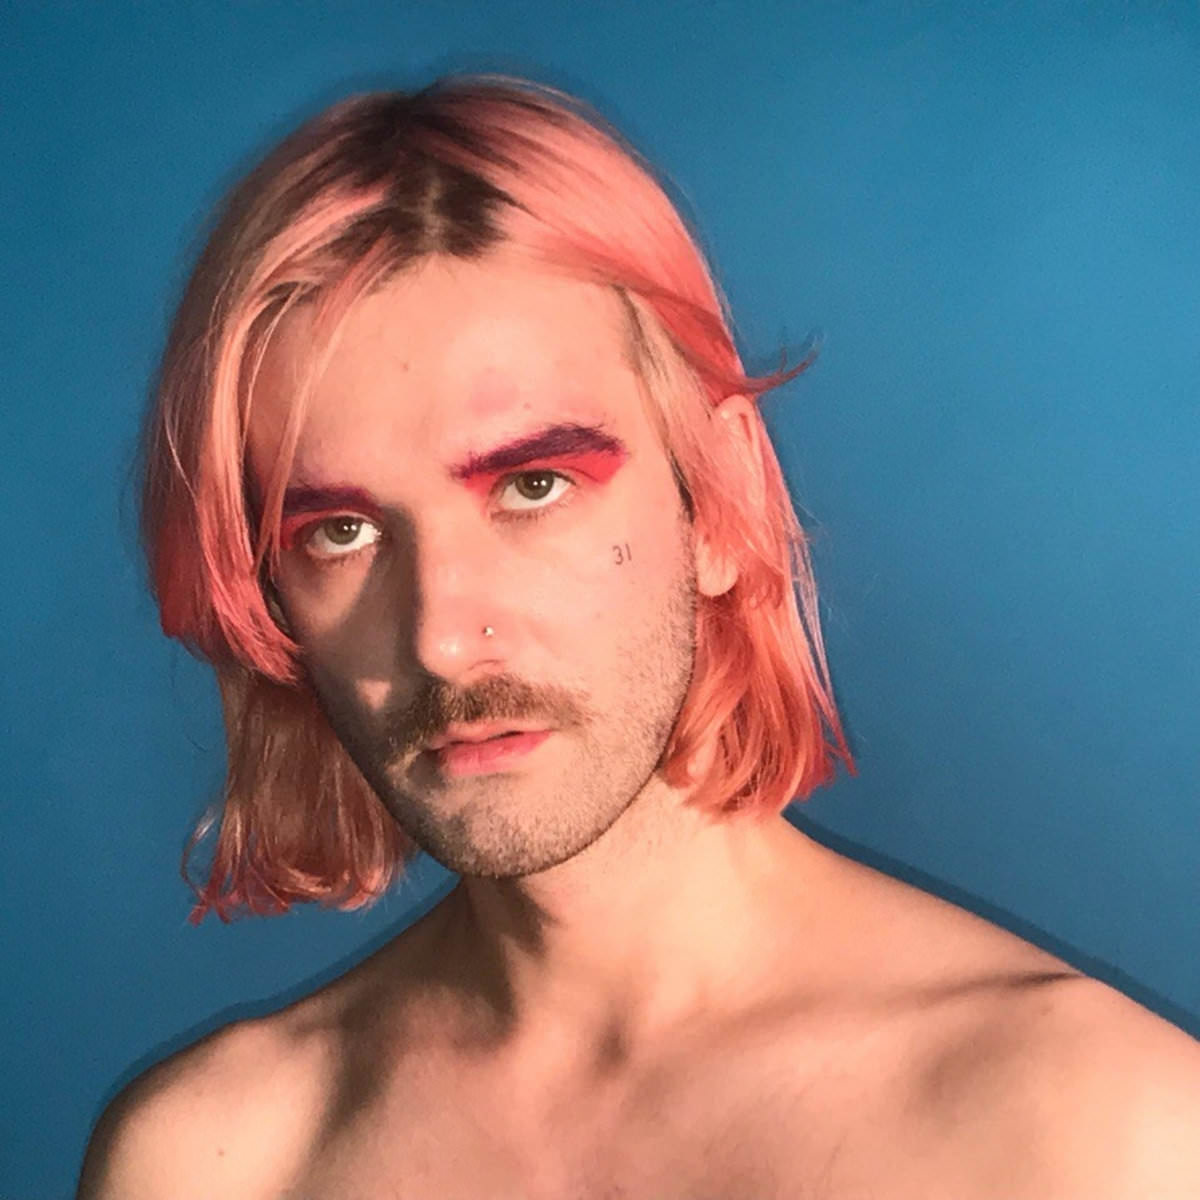 Фотография исполнителя Арсений Креститель. У него розовые волосы, лёгкий макияж и небритая щетина.